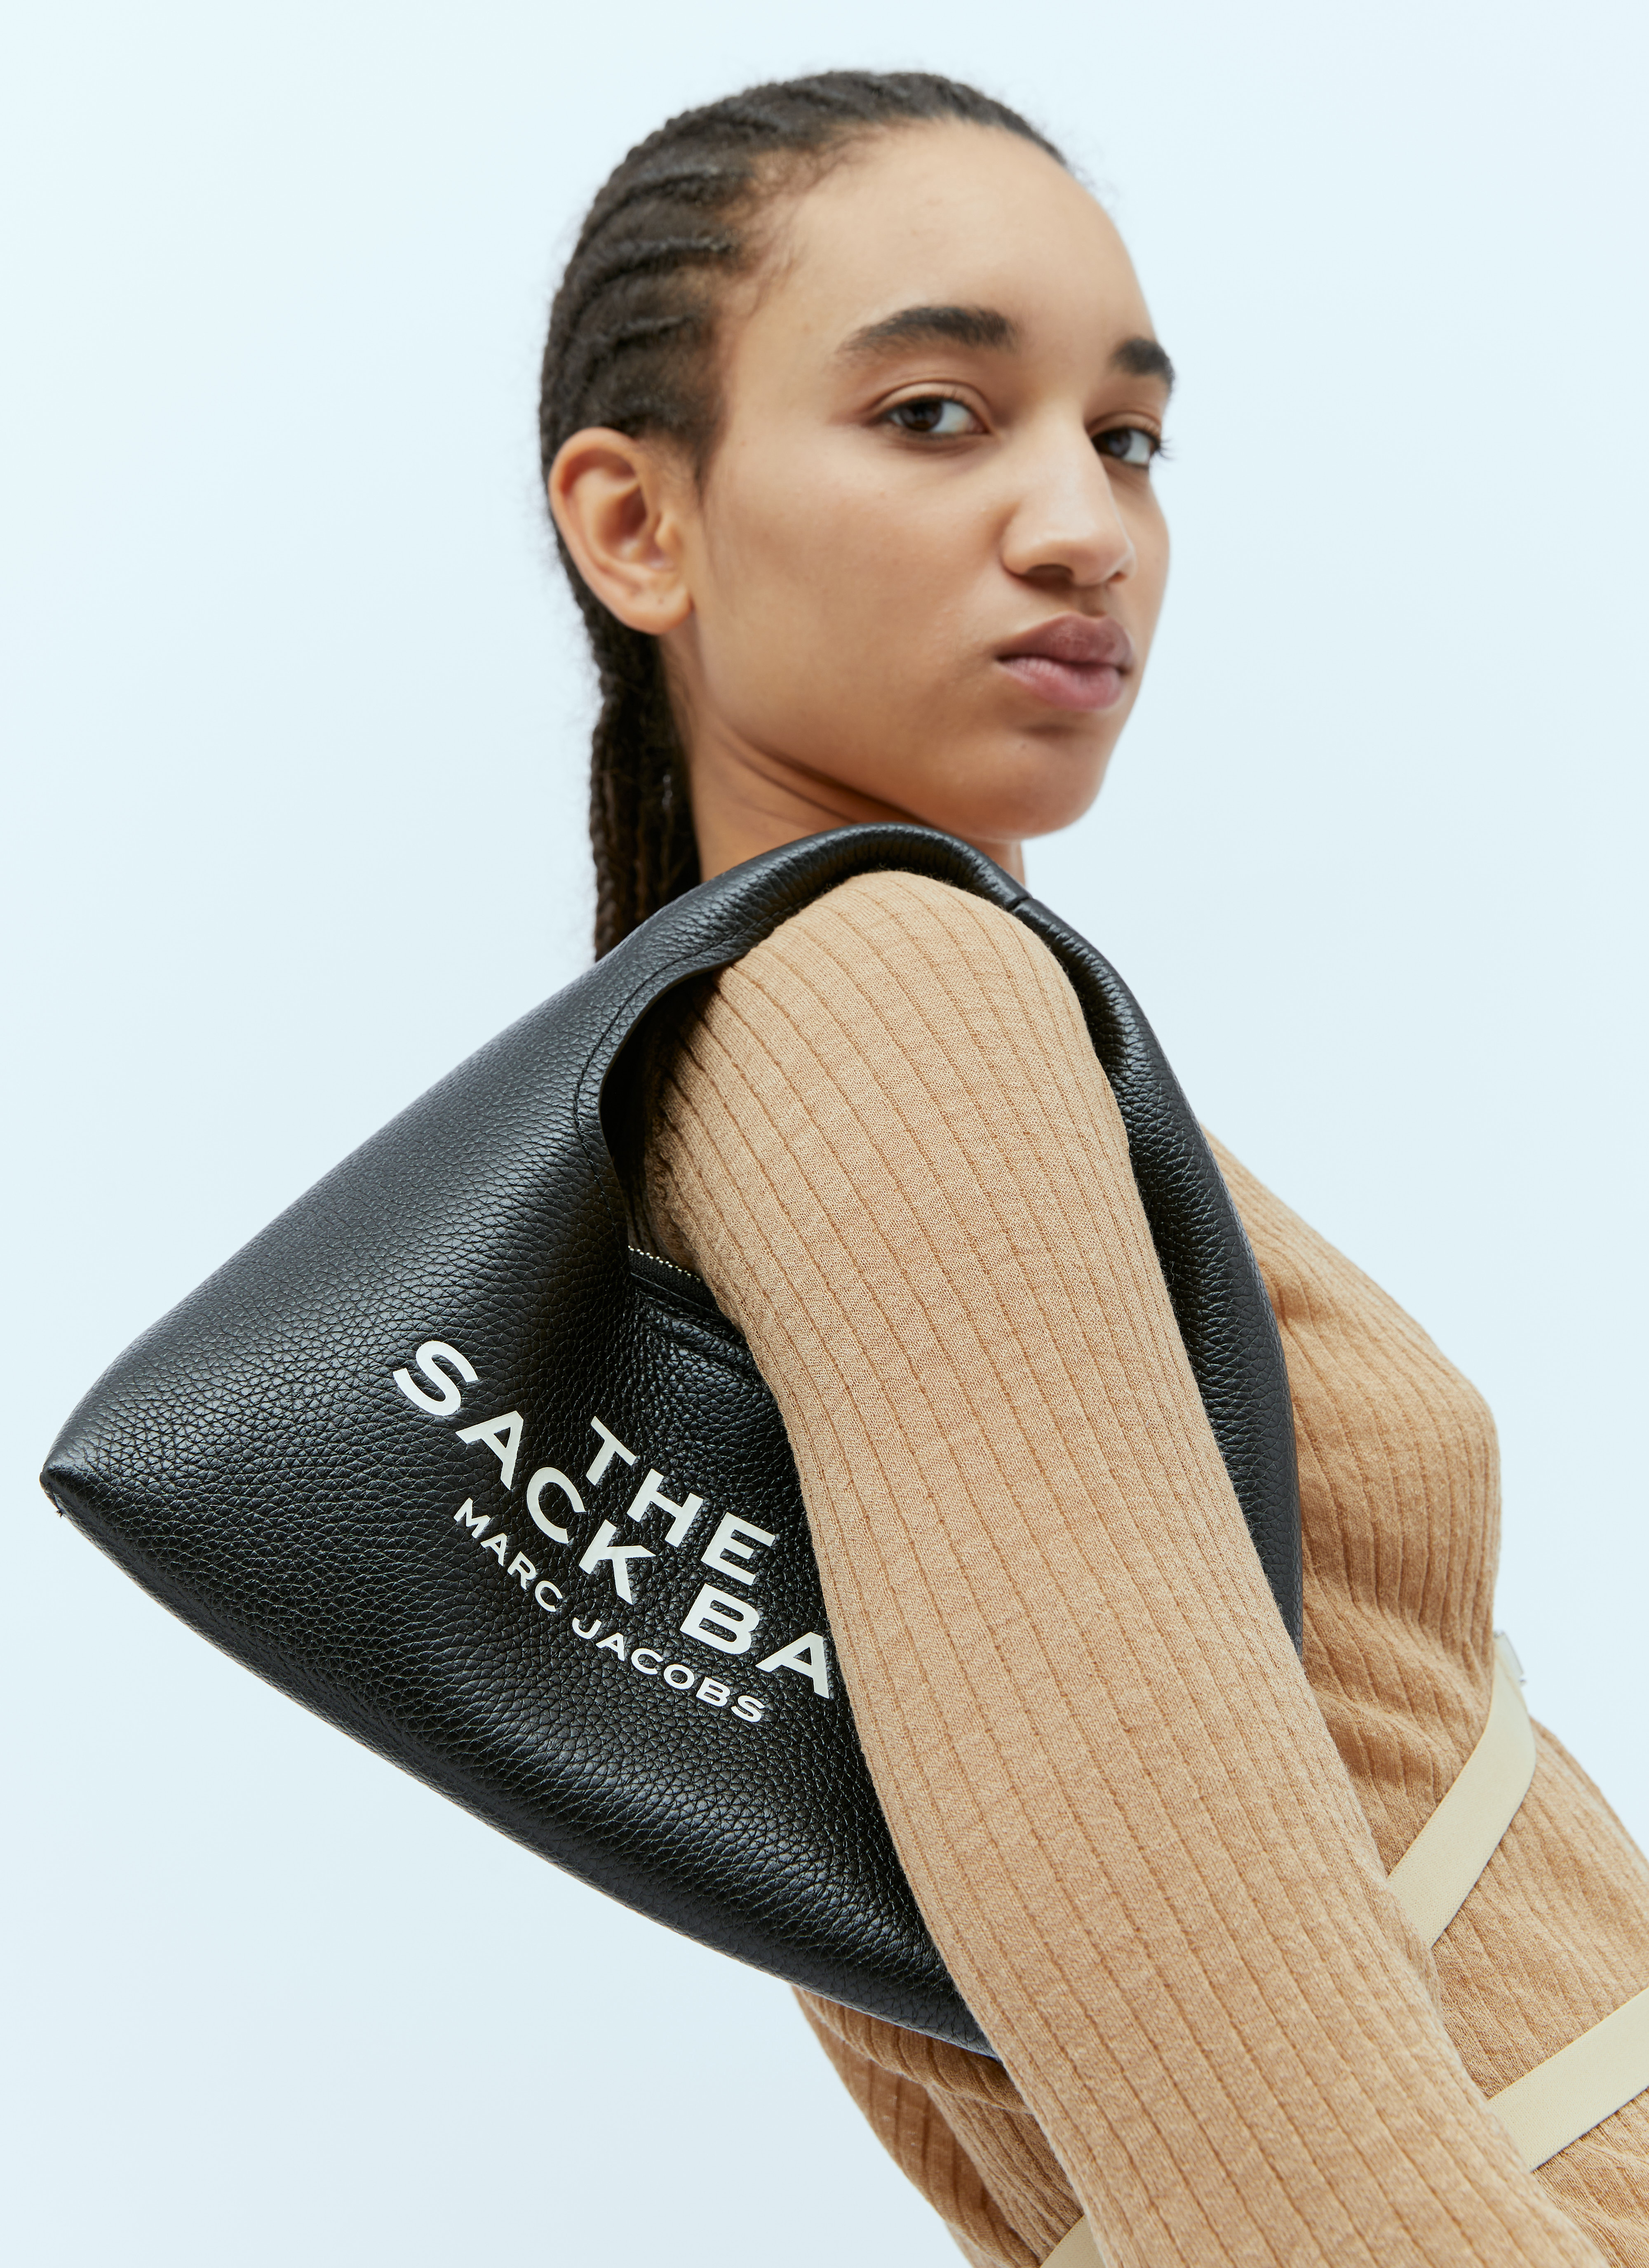 The Sack Bag, Marc Jacobs